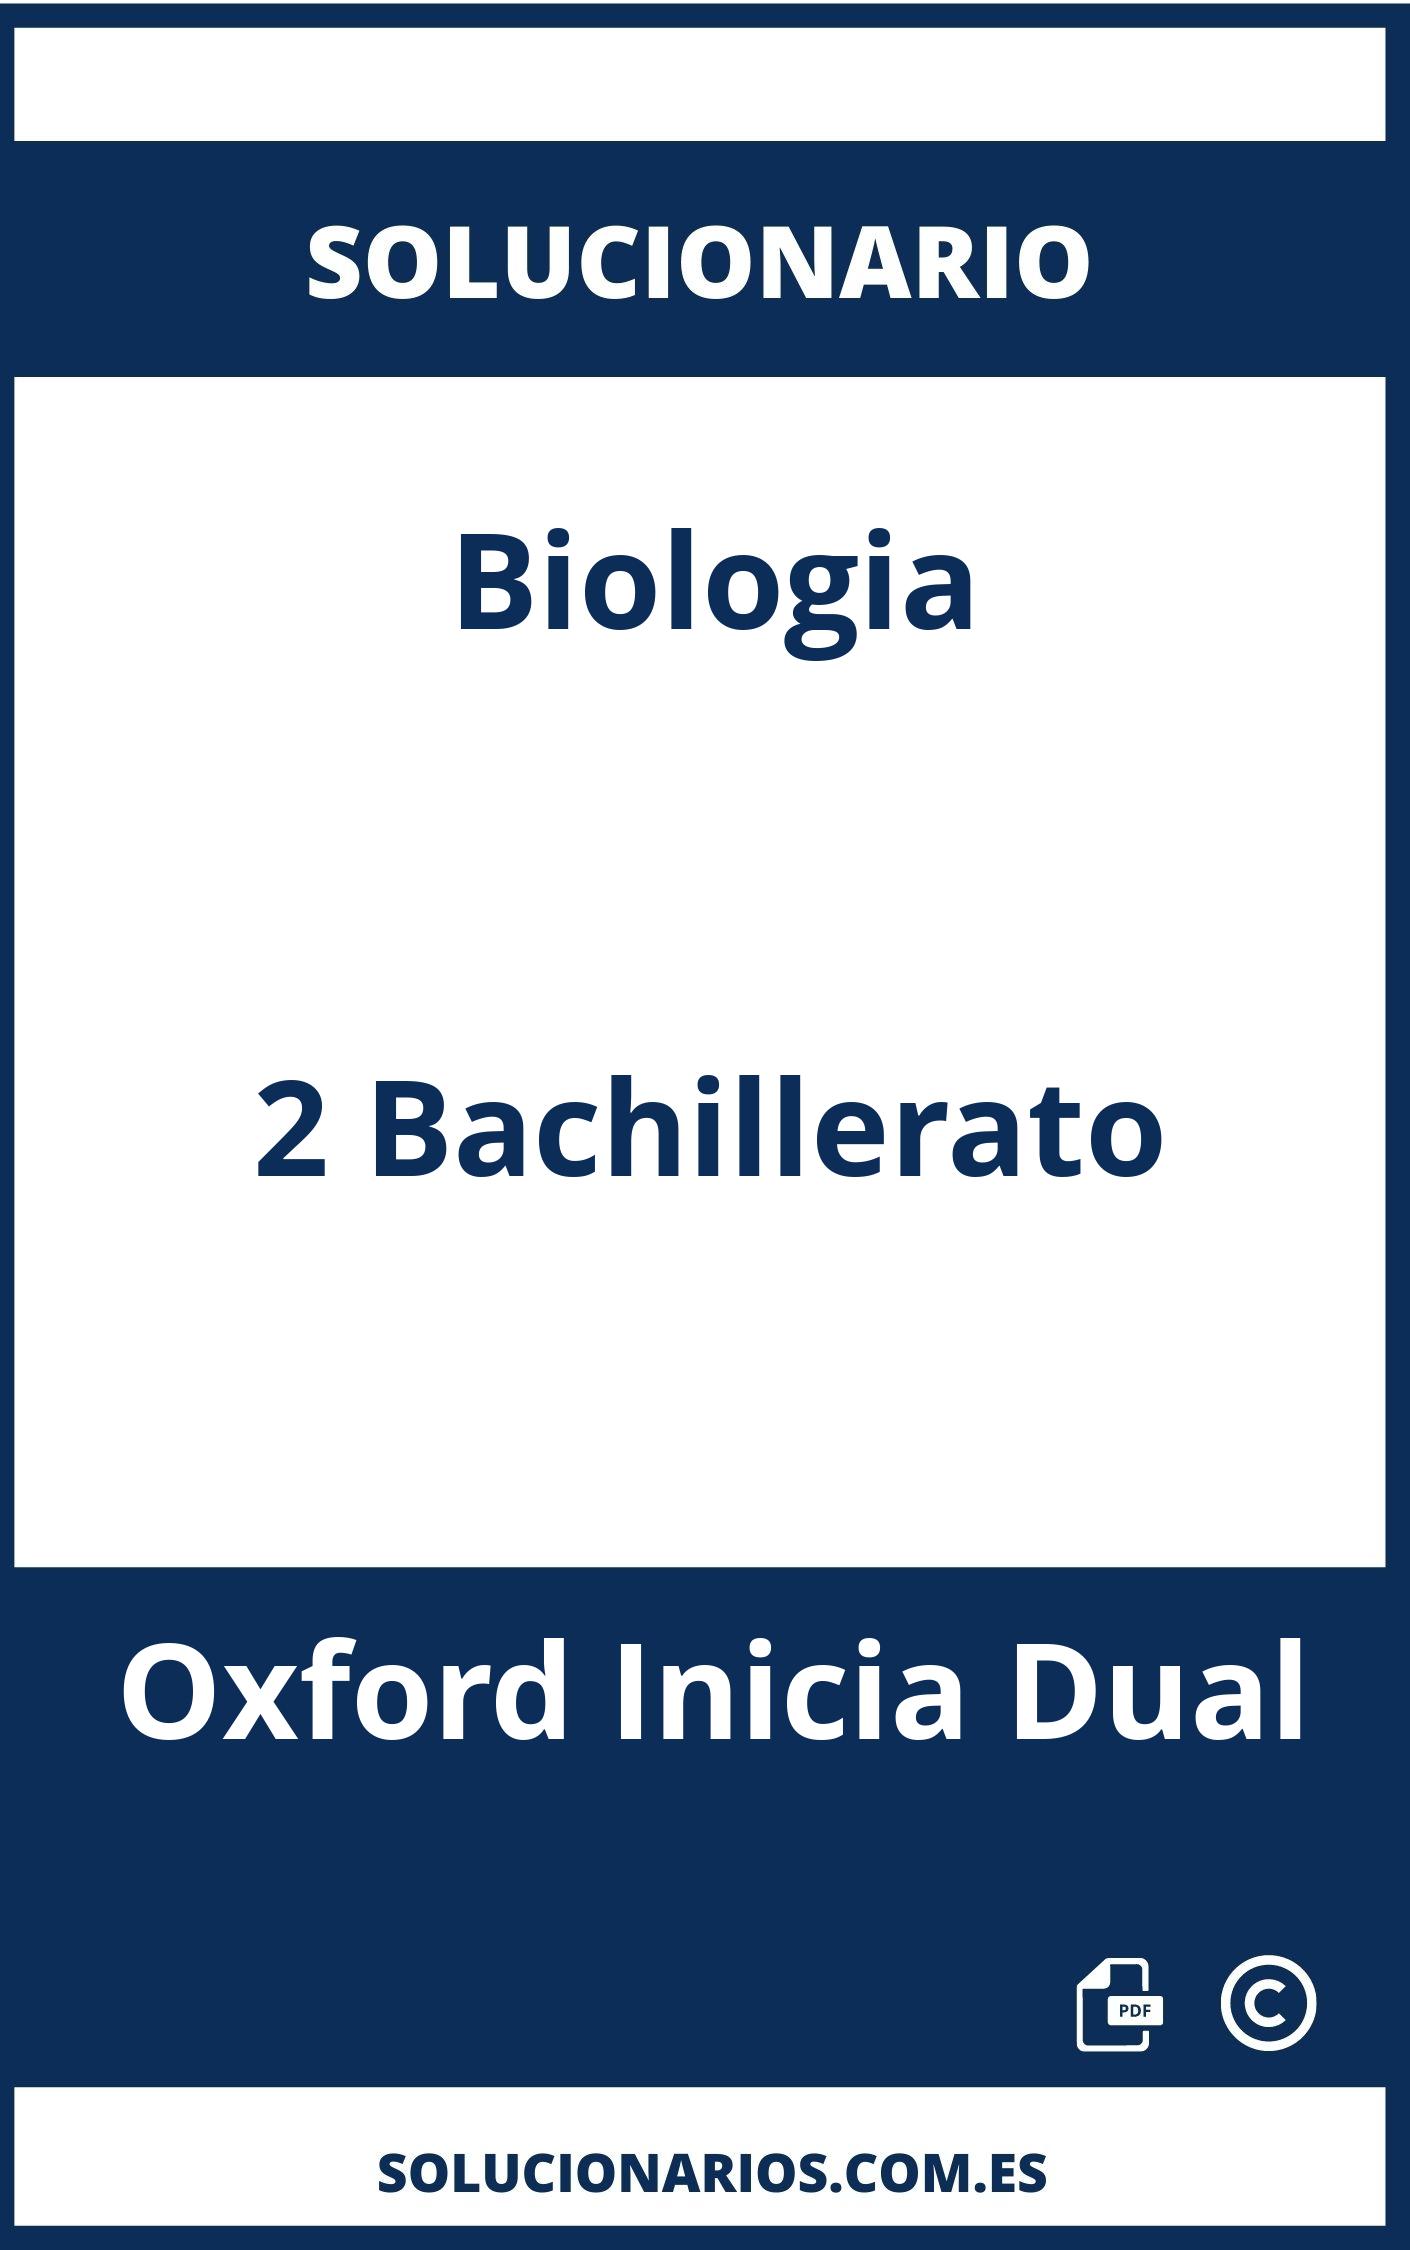 Solucionario Biologia 2 Bachillerato Oxford Inicia Dual